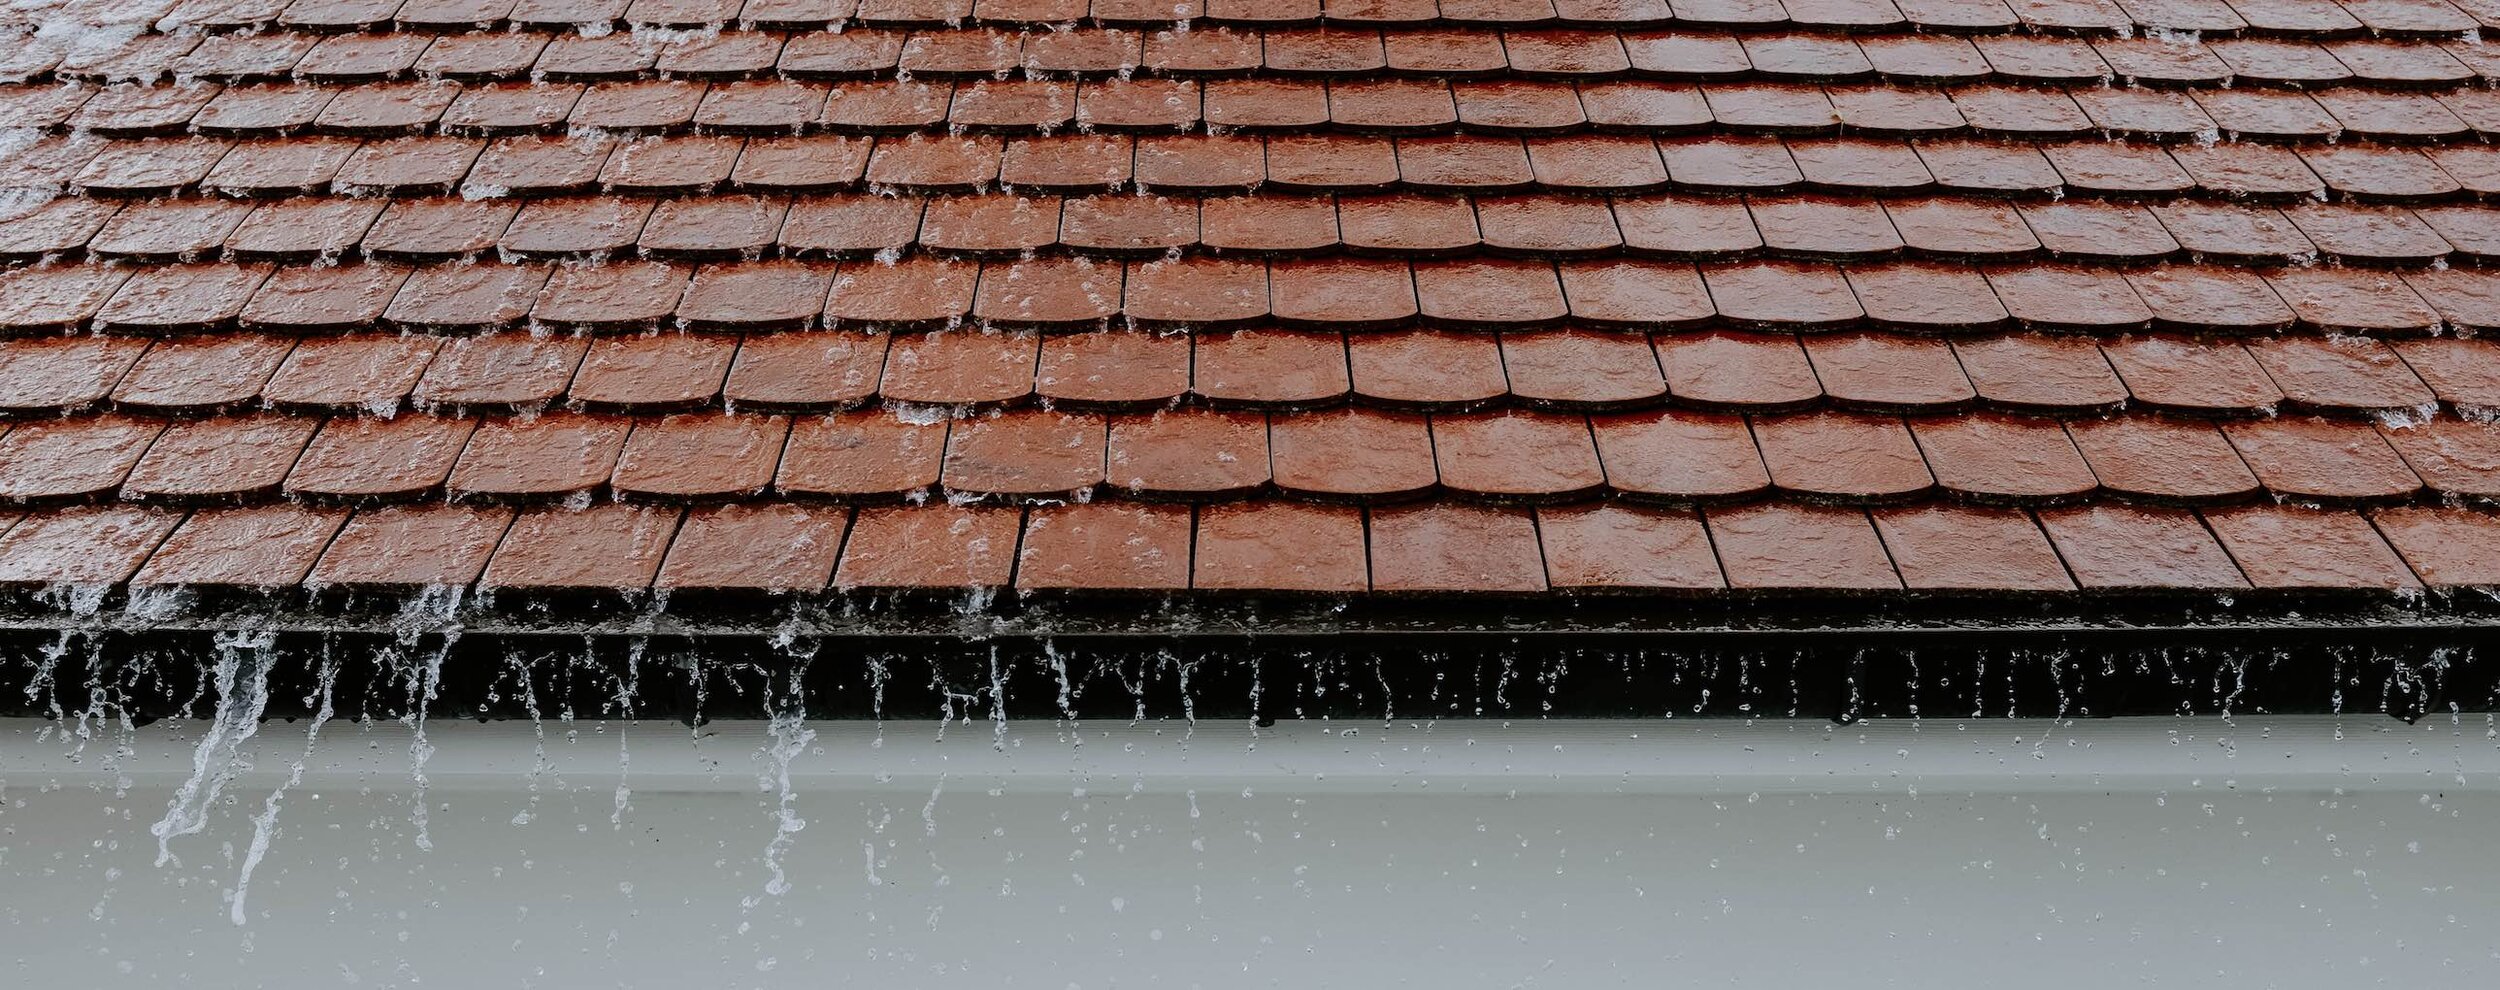 rain+roof